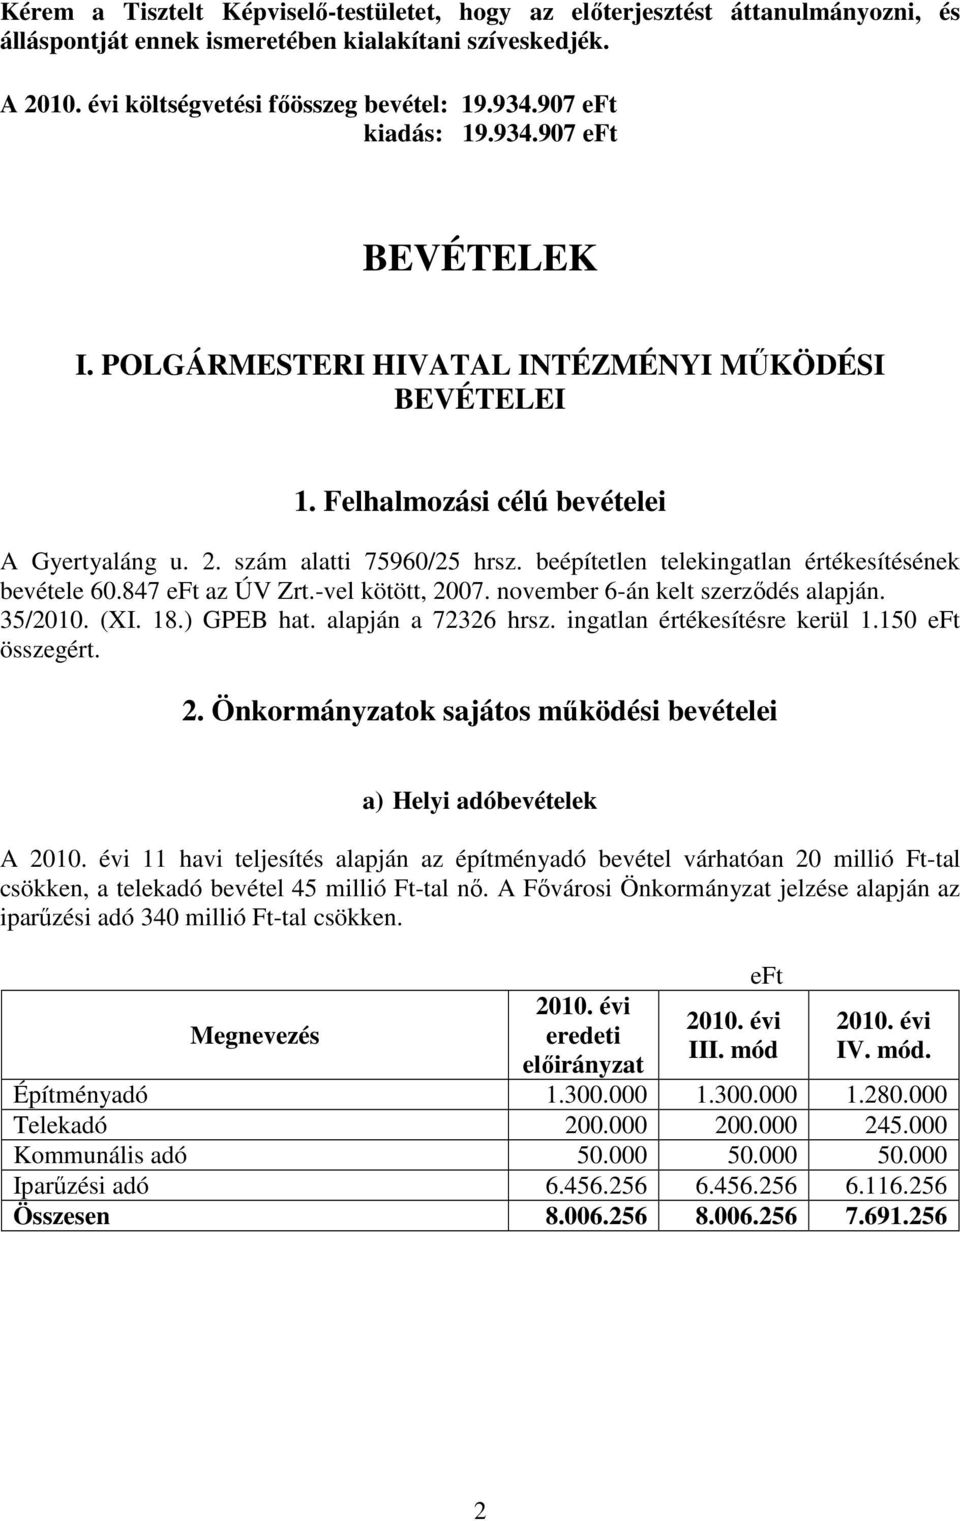 beépítetlen telekingatlan értékesítésének bevétele 60.847 eft az ÚV Zrt.-vel kötött, 2007. november 6-án kelt szerzıdés alapján. 35/2010. (XI. 18.) GPEB hat. alapján a 72326 hrsz.